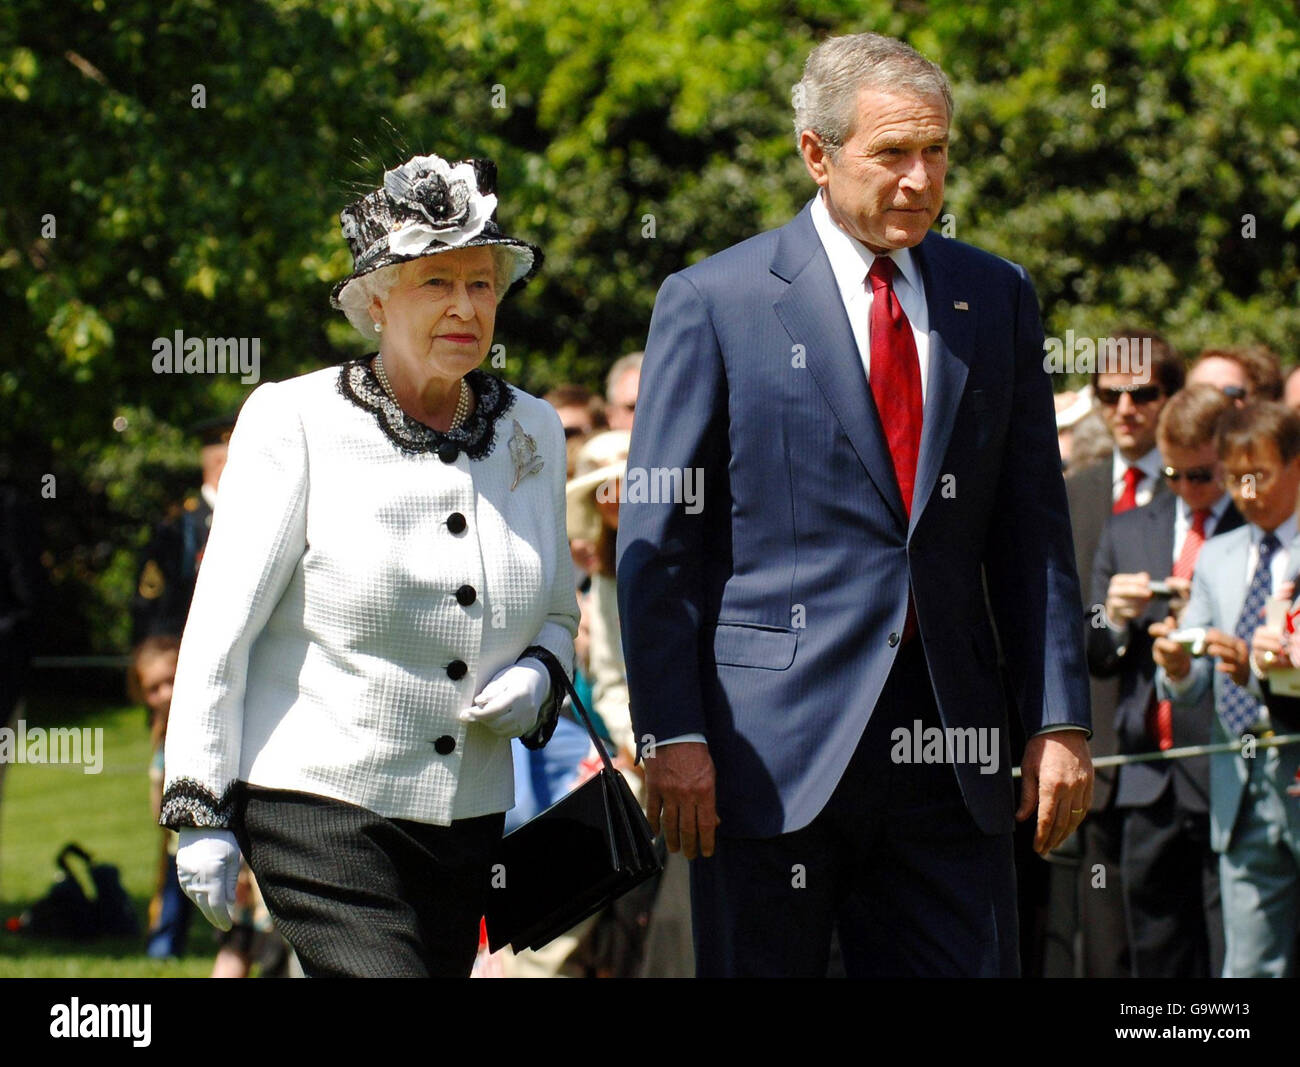 La reine Elizabeth II et le président des États-Unis d'Amérique George Bush traversent les jardins de la Maison Blanche, Washington DC, le sixième jour de la visite d'État de la reine en Amérique. Banque D'Images